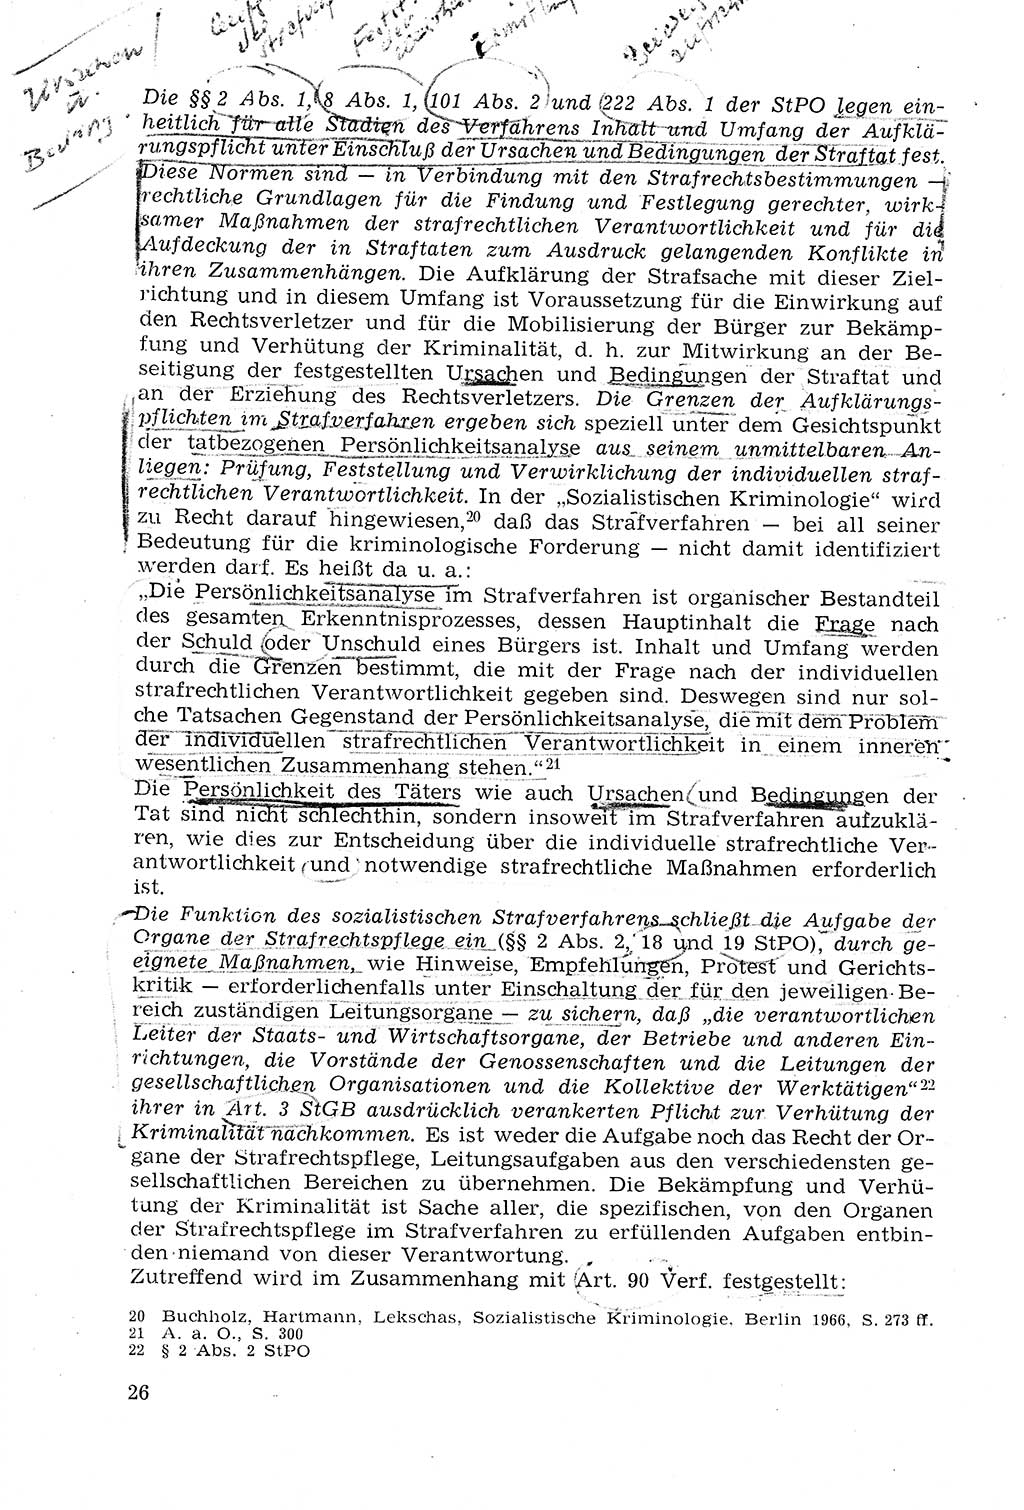 Strafprozeßrecht der DDR (Deutsche Demokratische Republik), Lehrmaterial 1969, Seite 26 (Strafprozeßr. DDR Lehrmat. 1969, S. 26)